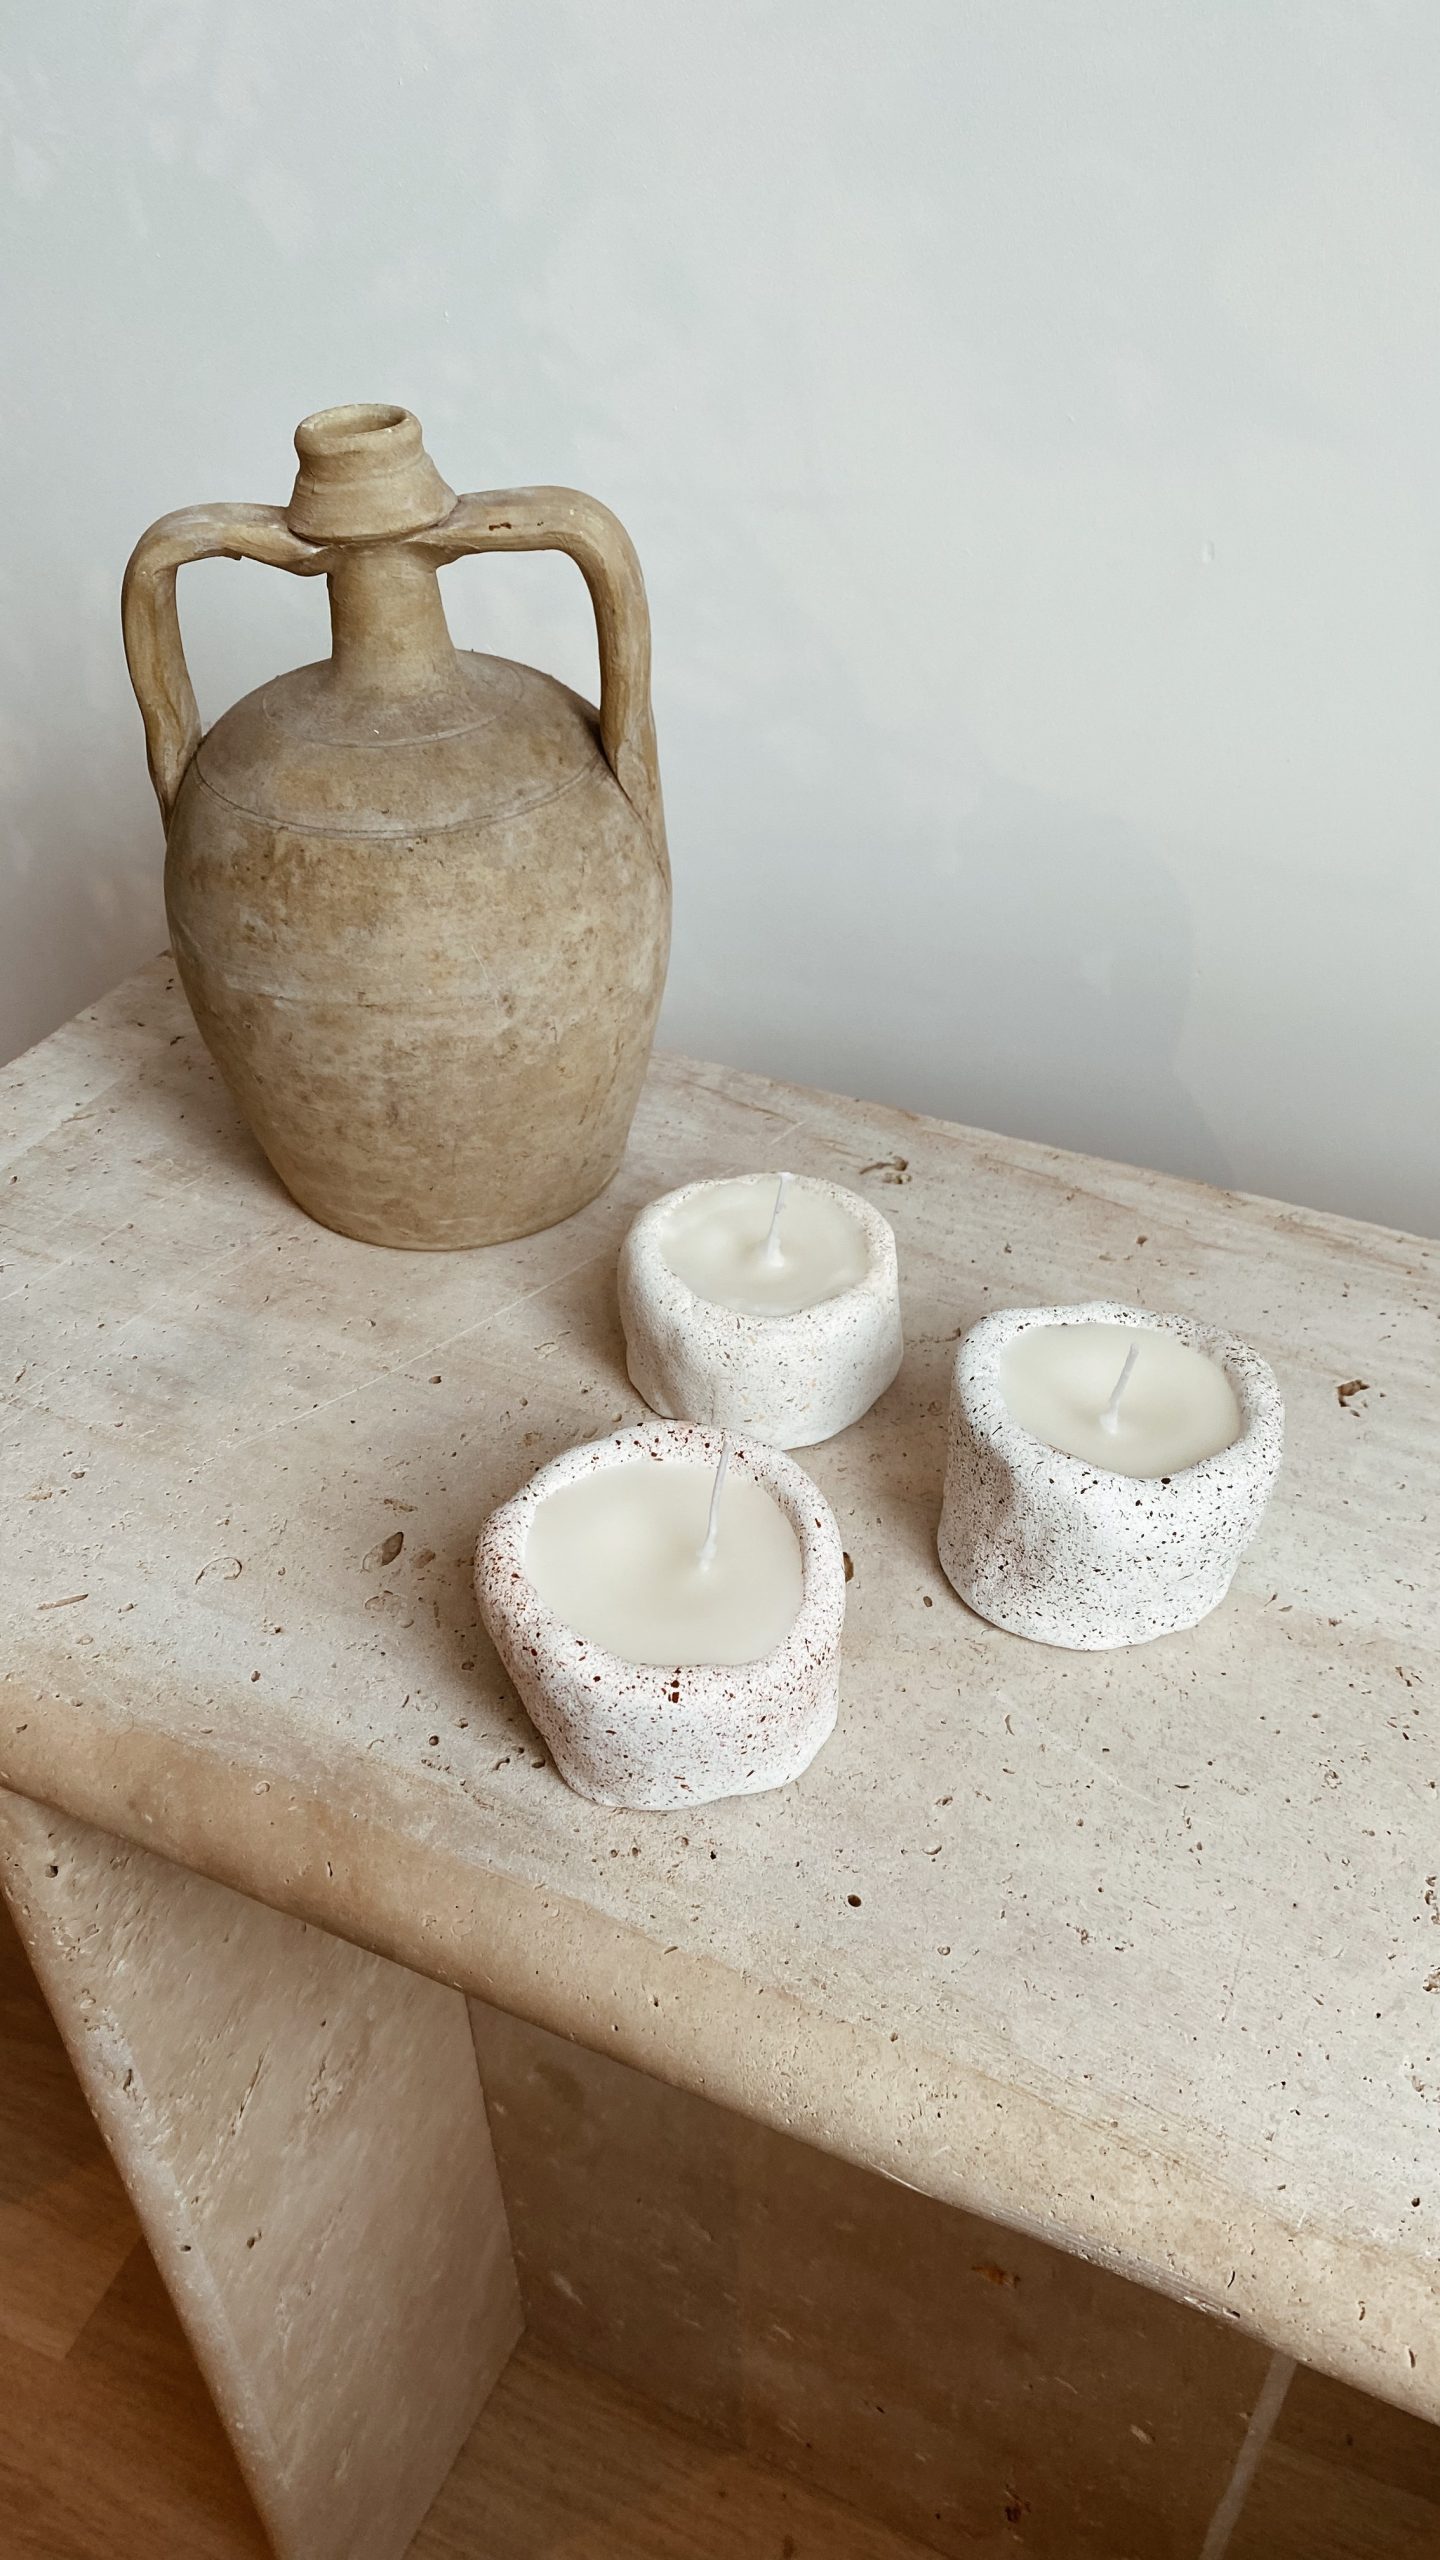 Comment utiliser la cire sur une poterie? [ Décor sur argile